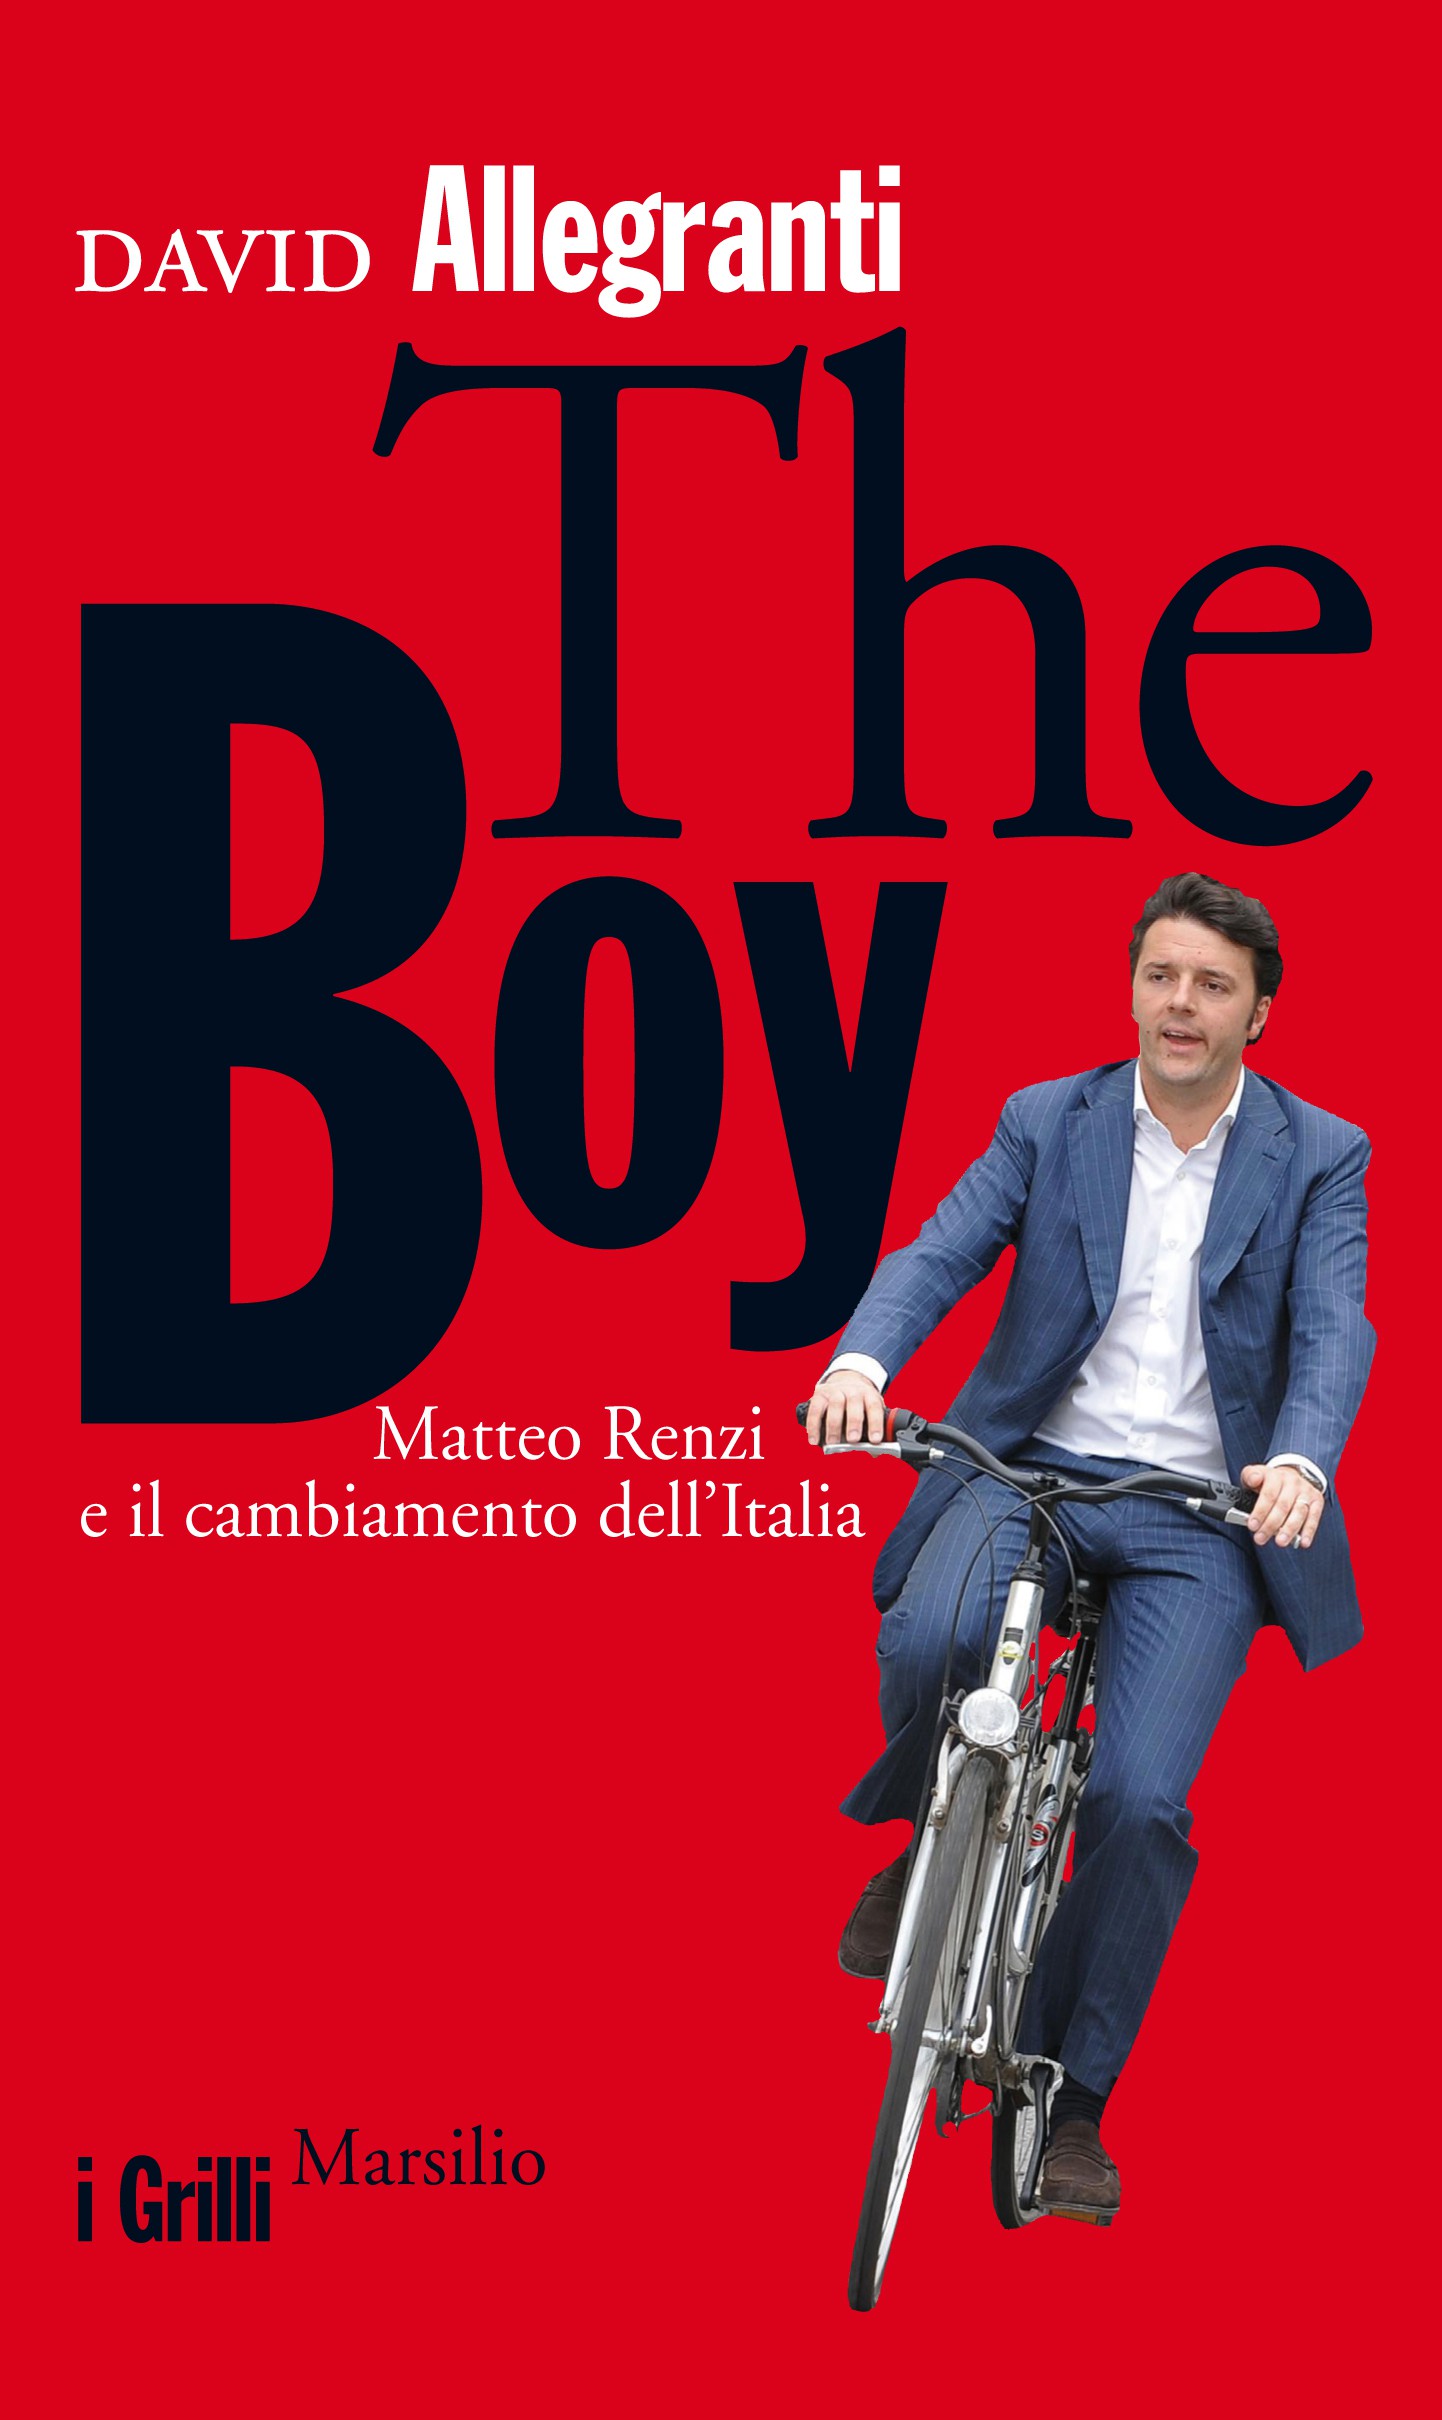 Recensione libro "The boy" di David Allegranti